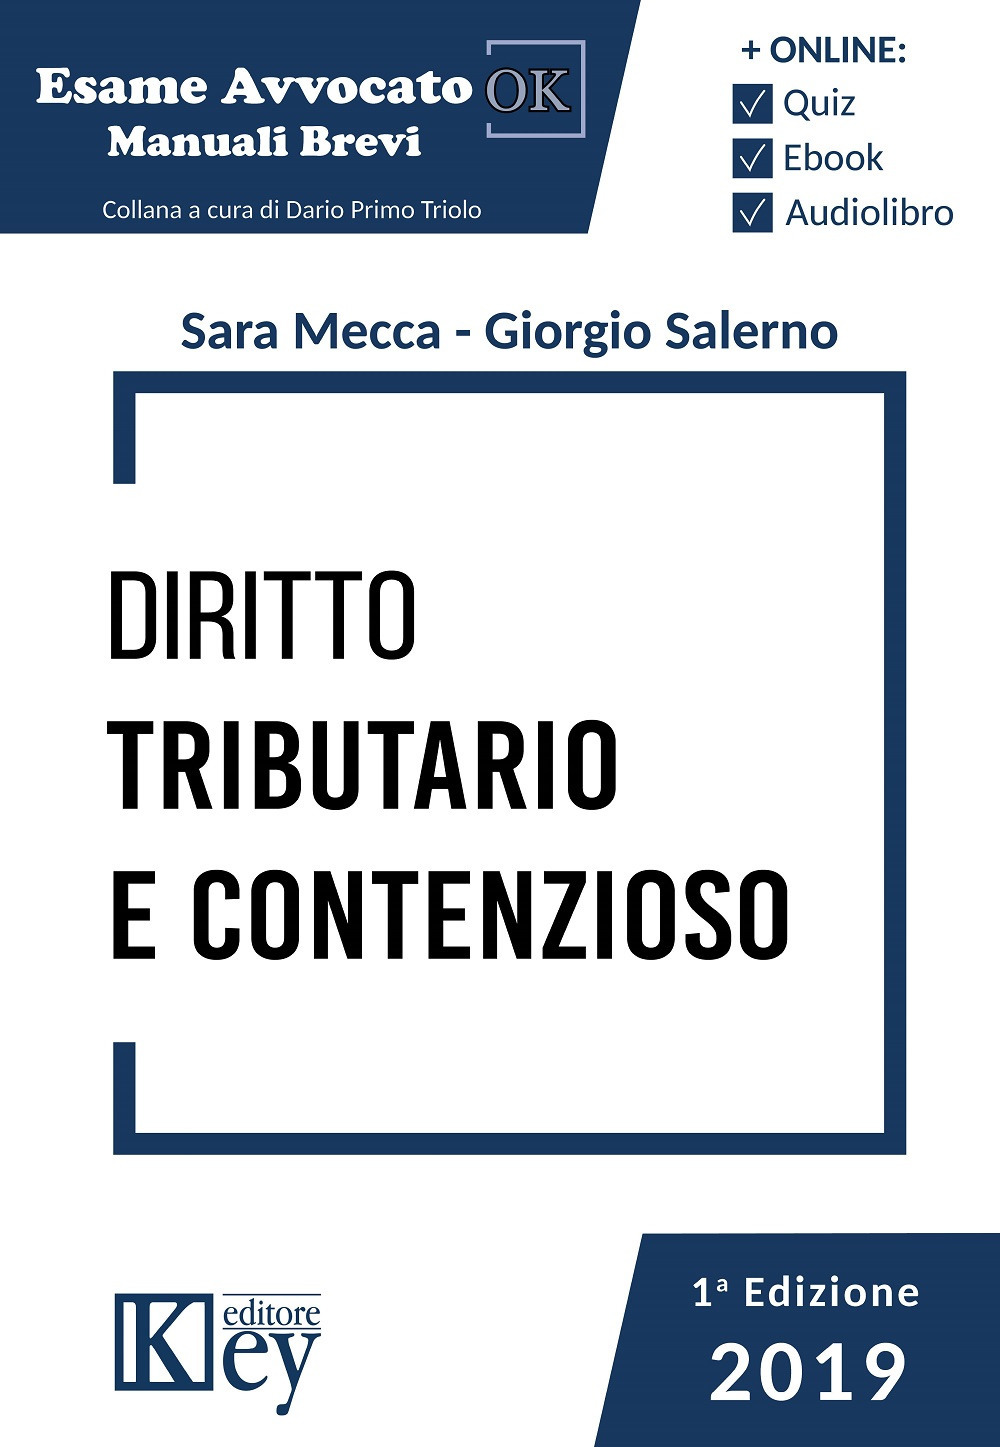 Libri Mecca Sara / Giorgio Salerno - Diritto Tributario E Contenzioso. Manuale Breve 2019 NUOVO SIGILLATO, EDIZIONE DEL 19/03/2020 SUBITO DISPONIBILE